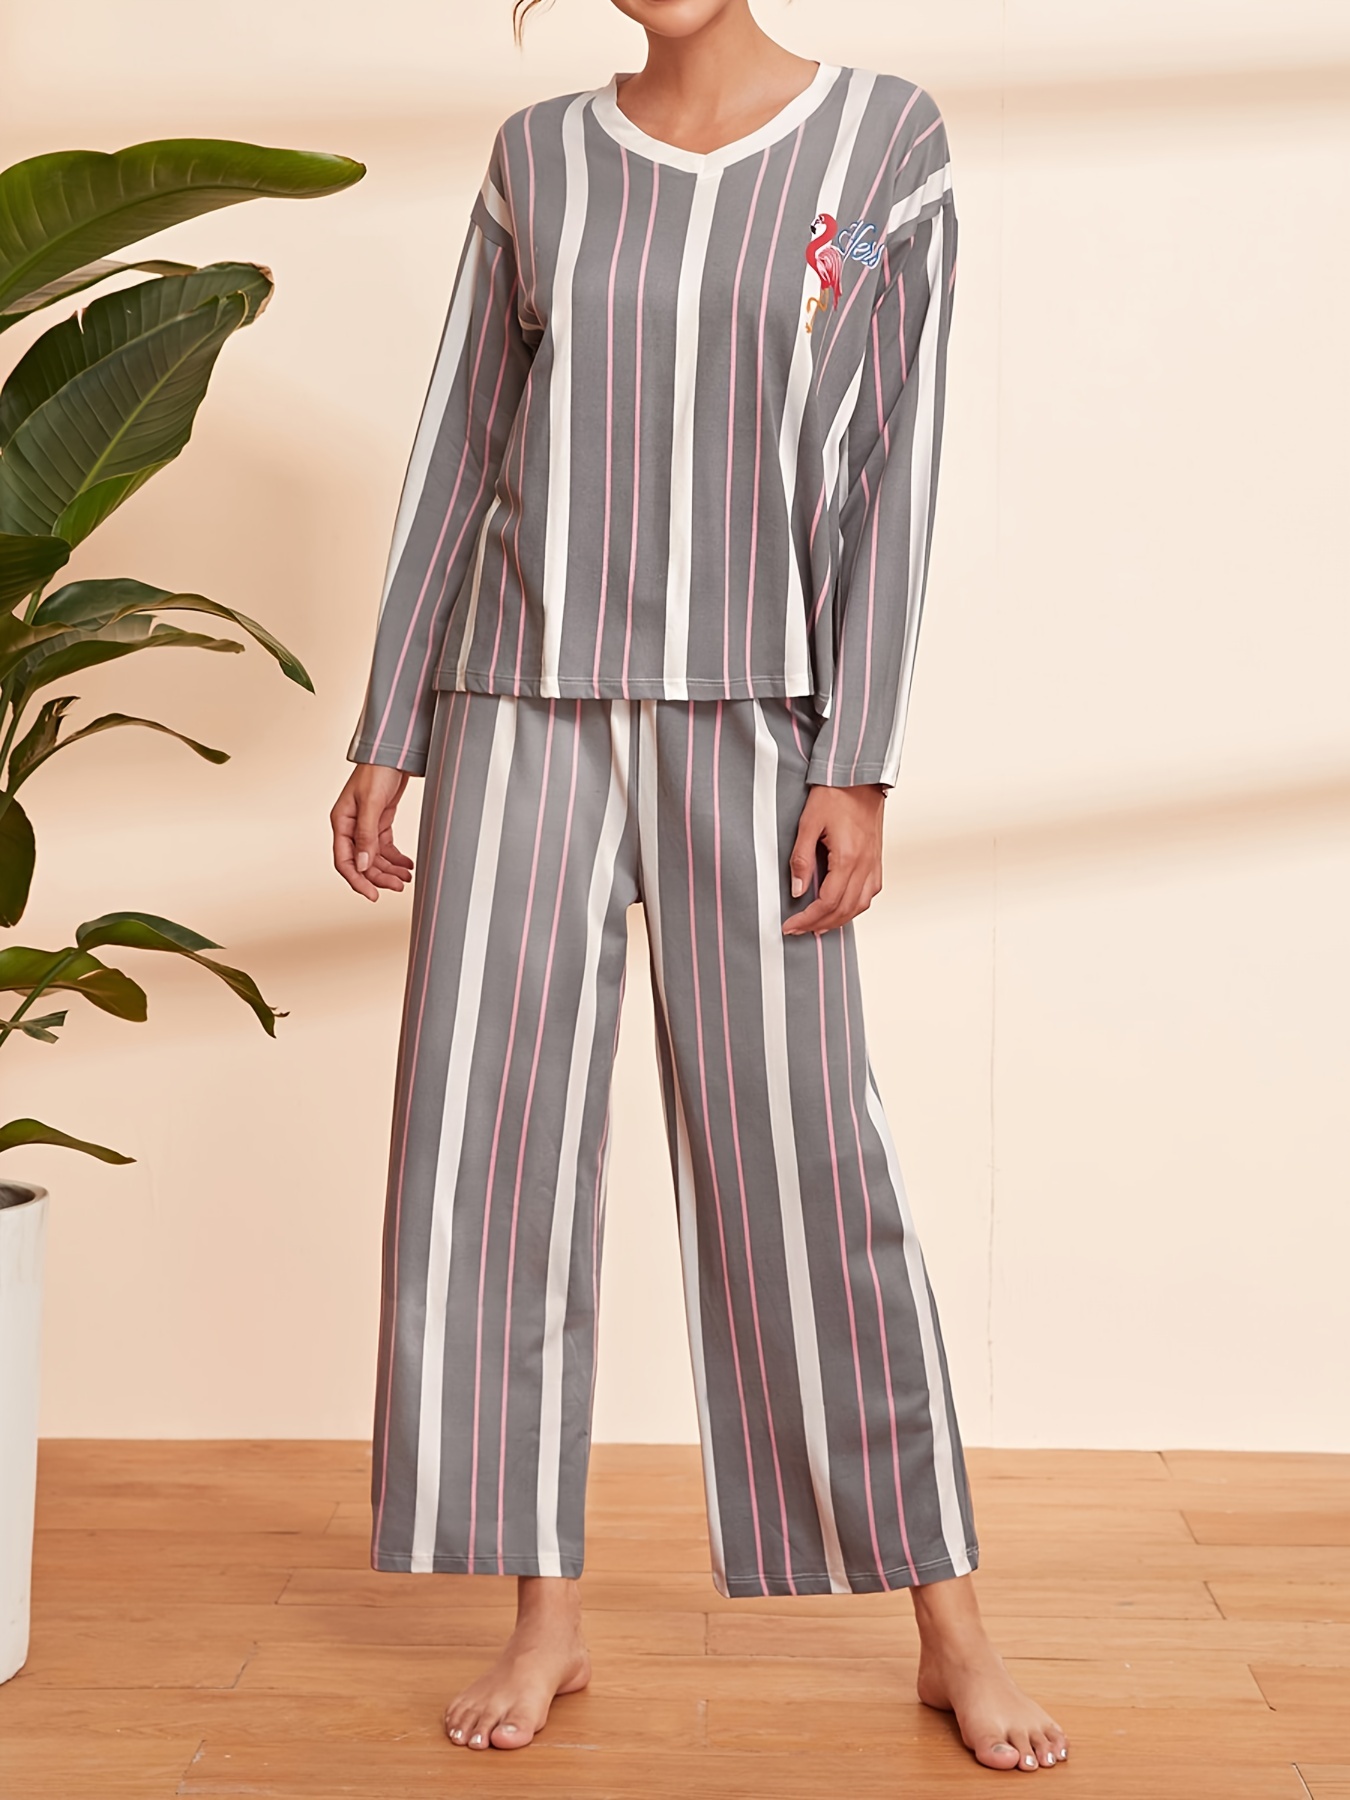 Cute Pajama Pants For Women - Temu